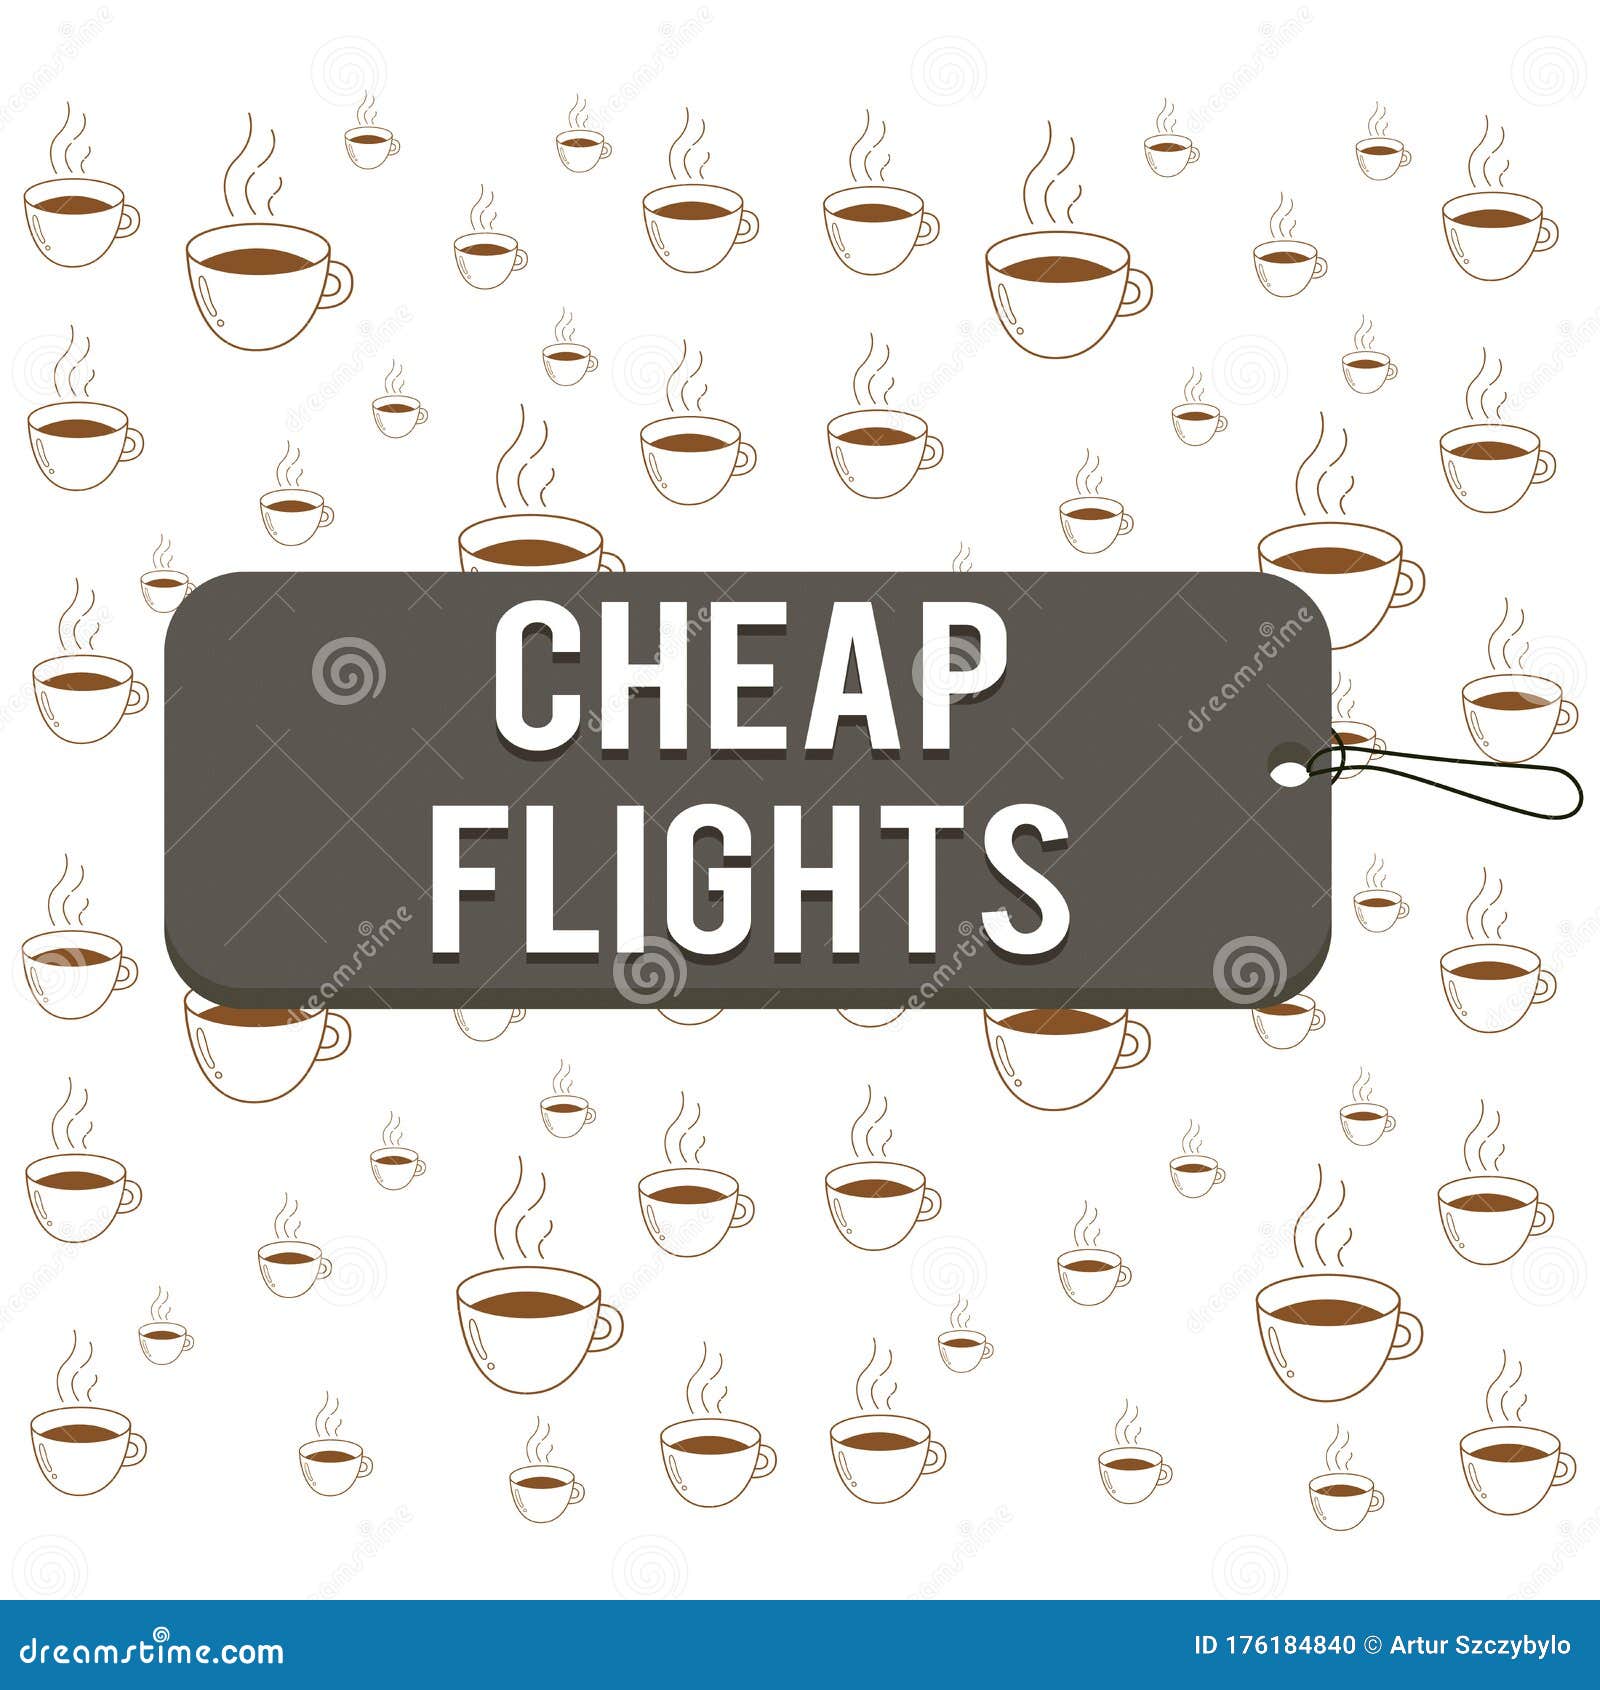 cheap flights essay